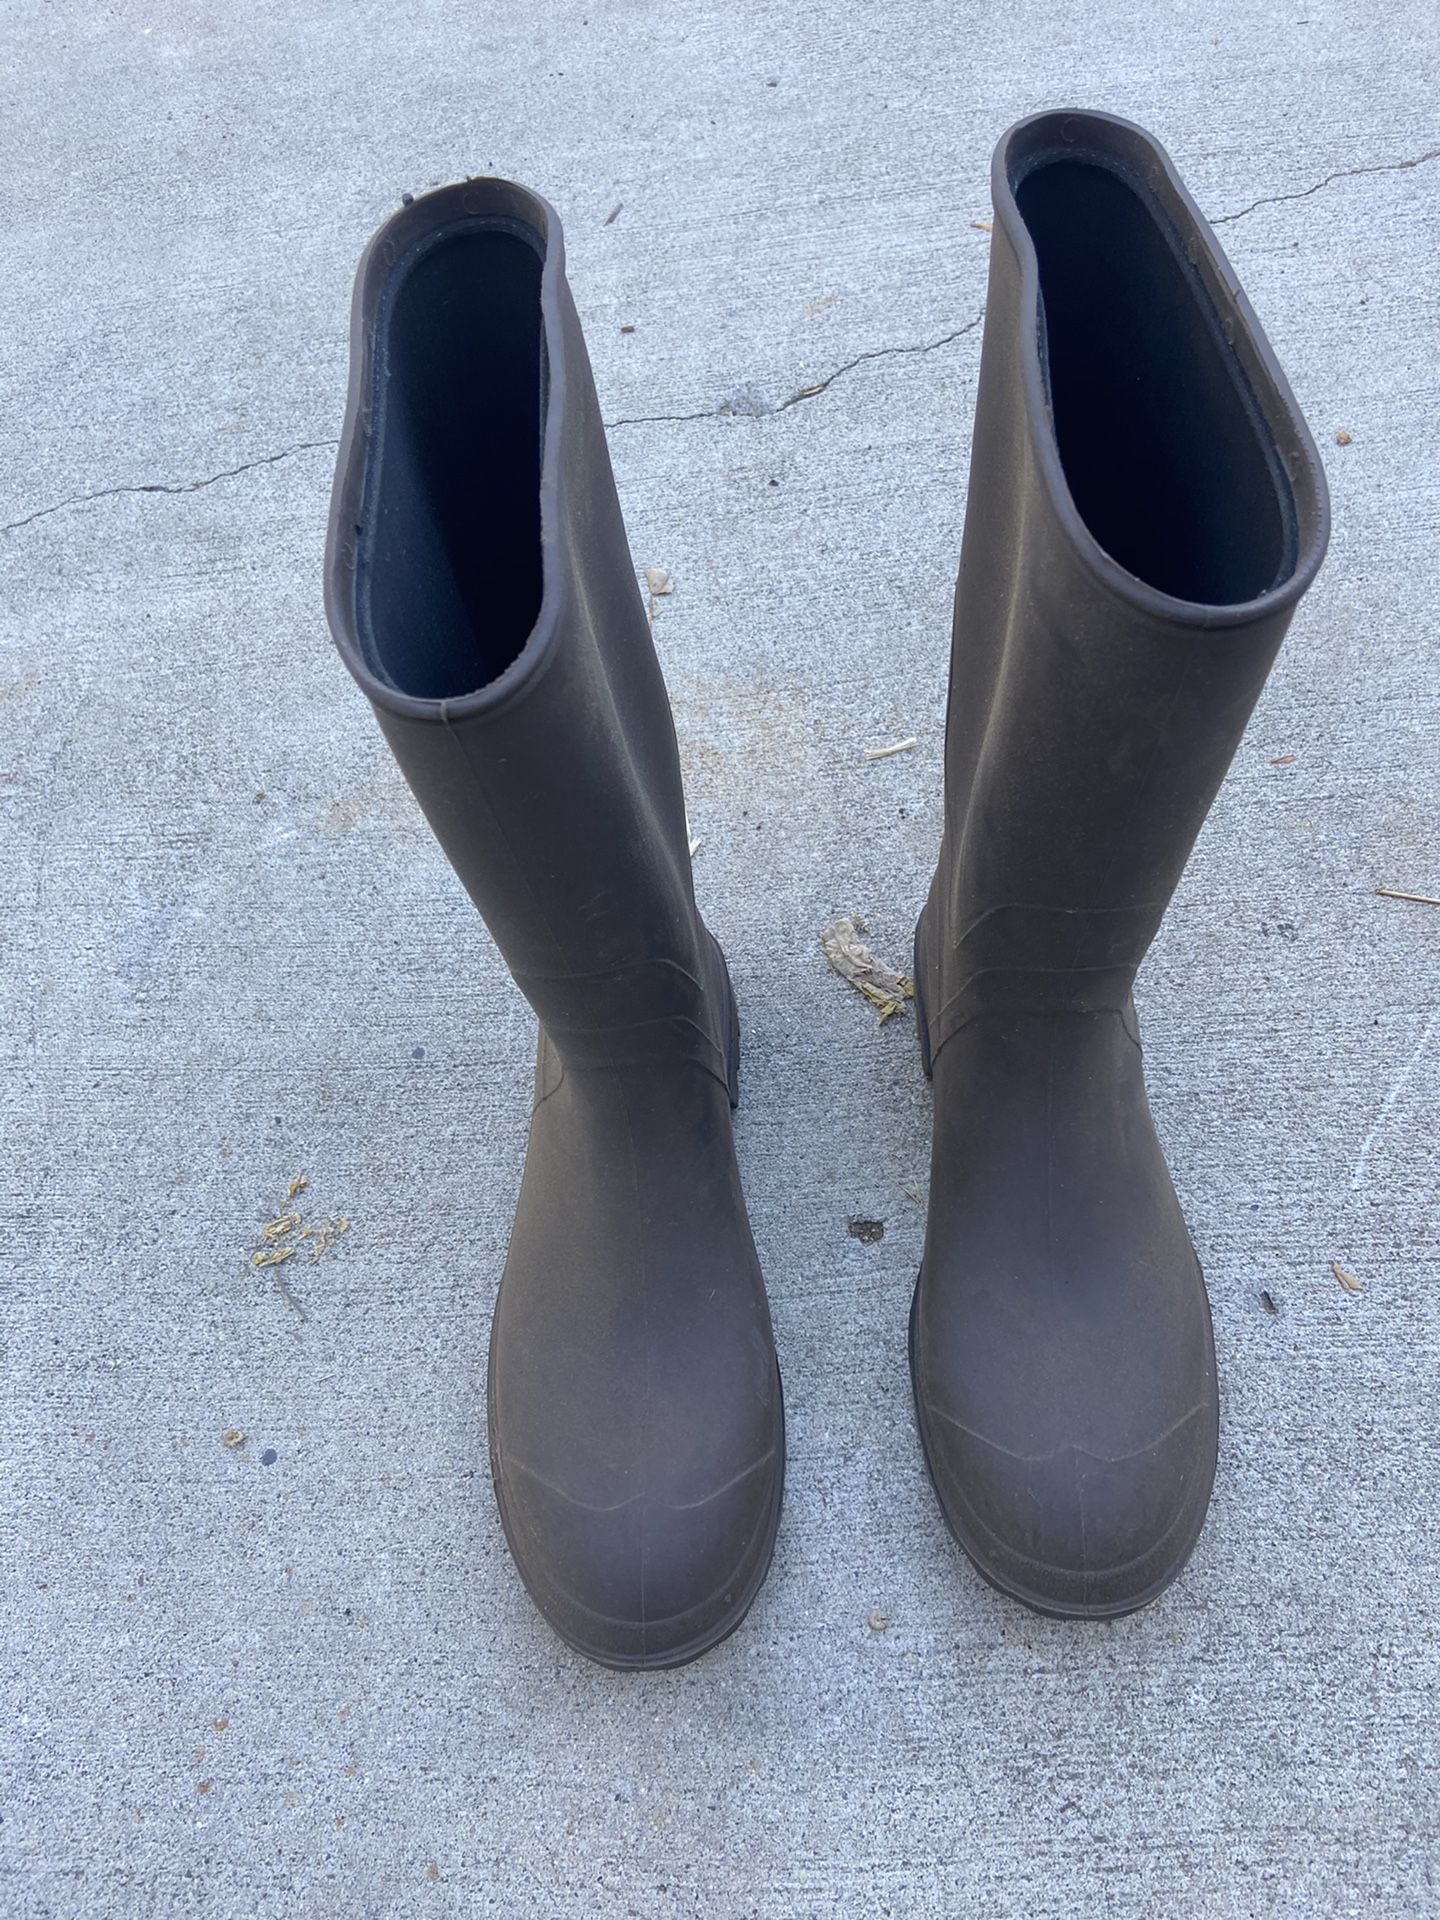 Men’s Size 11 Heavy Duty Rubber Rain Boots